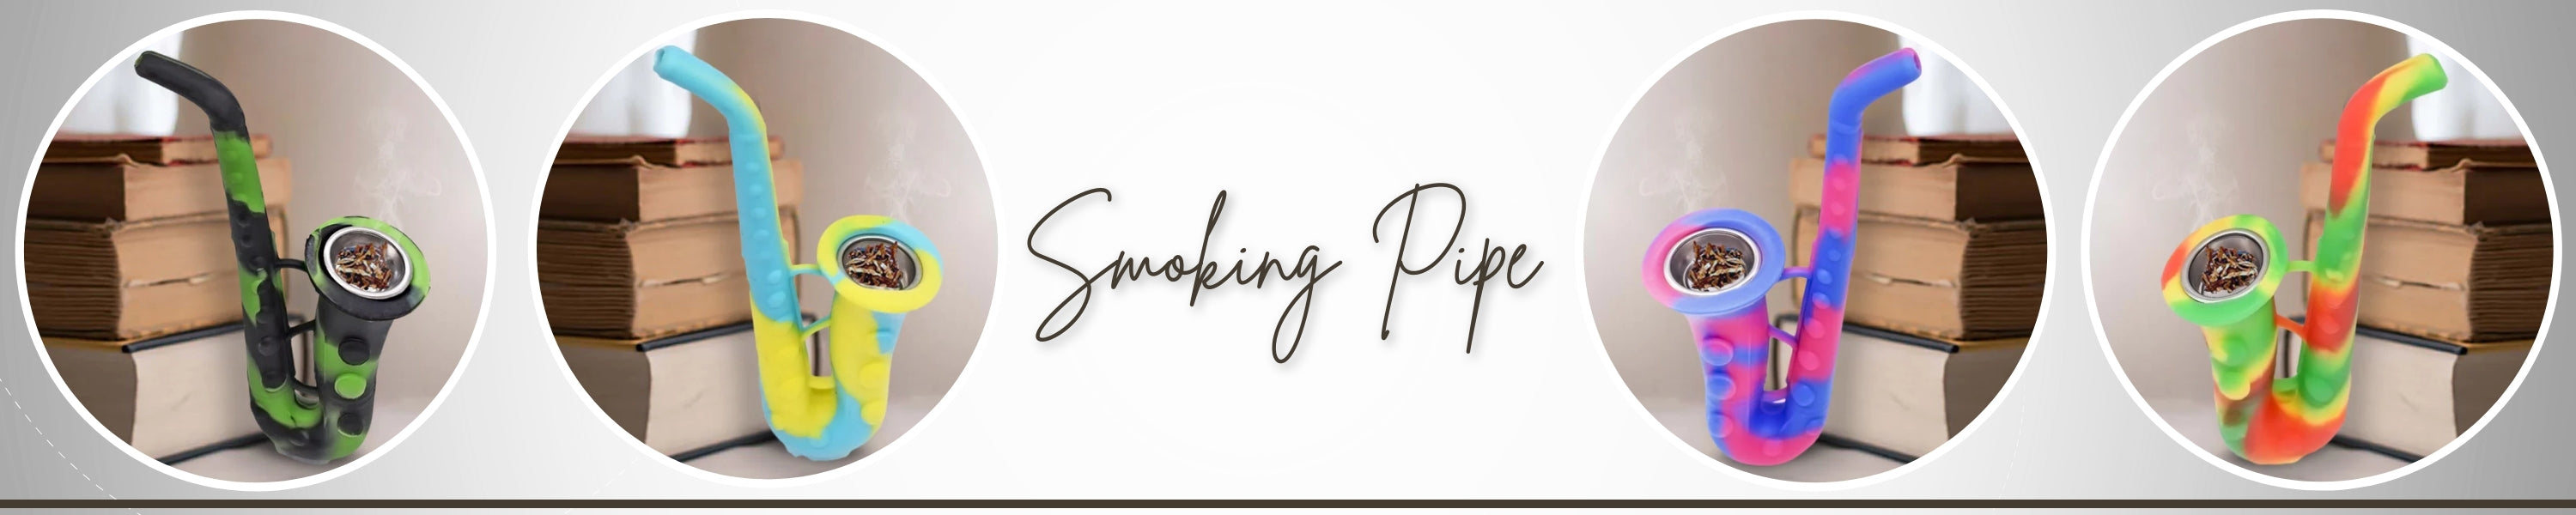 Smoking Pipes